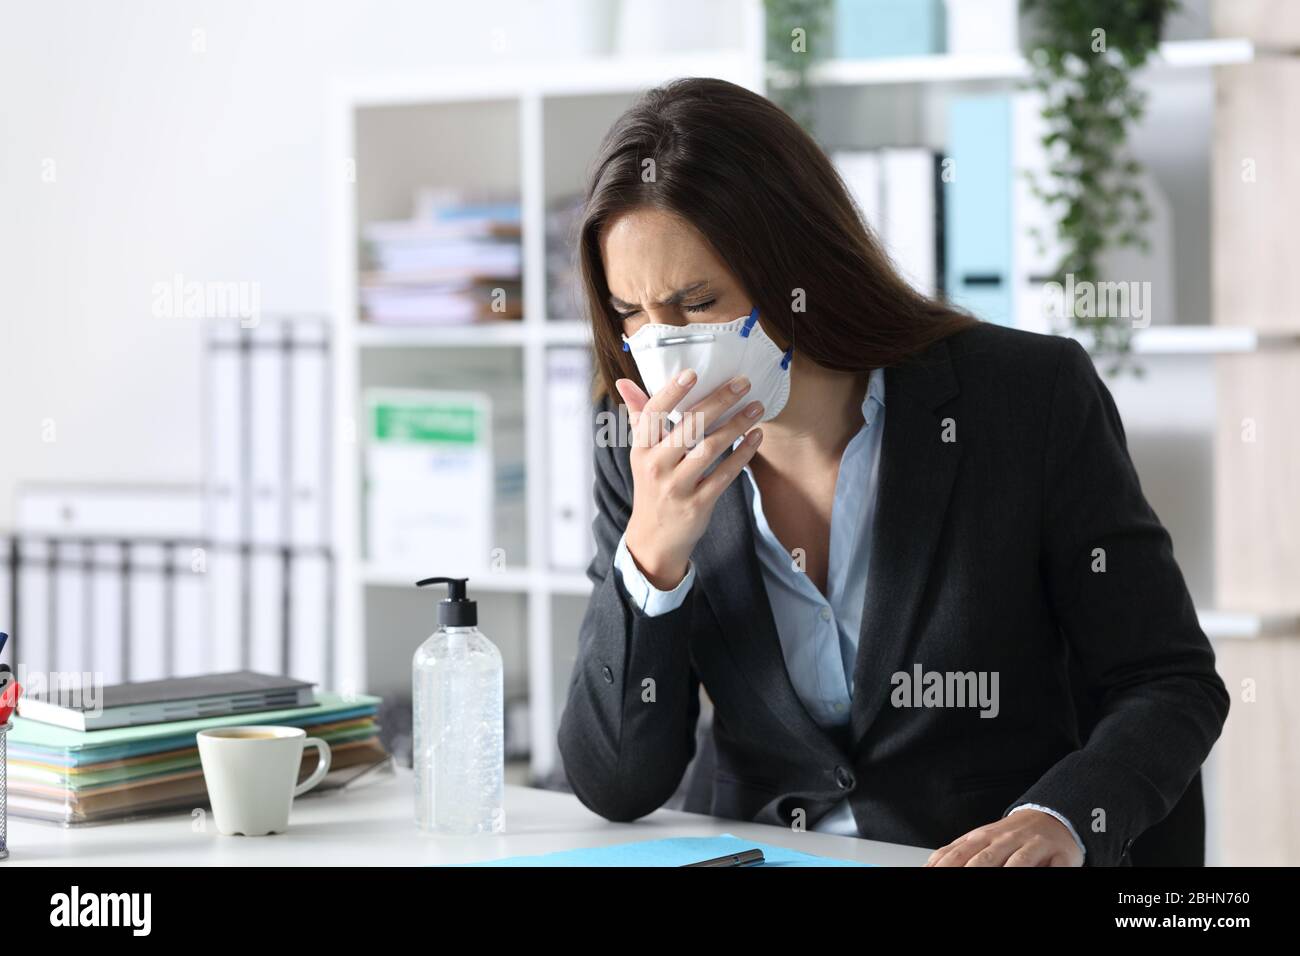 Exekutive Frau mit Maske hustet und niest auf einem Schreibtisch im Büro Stockfoto